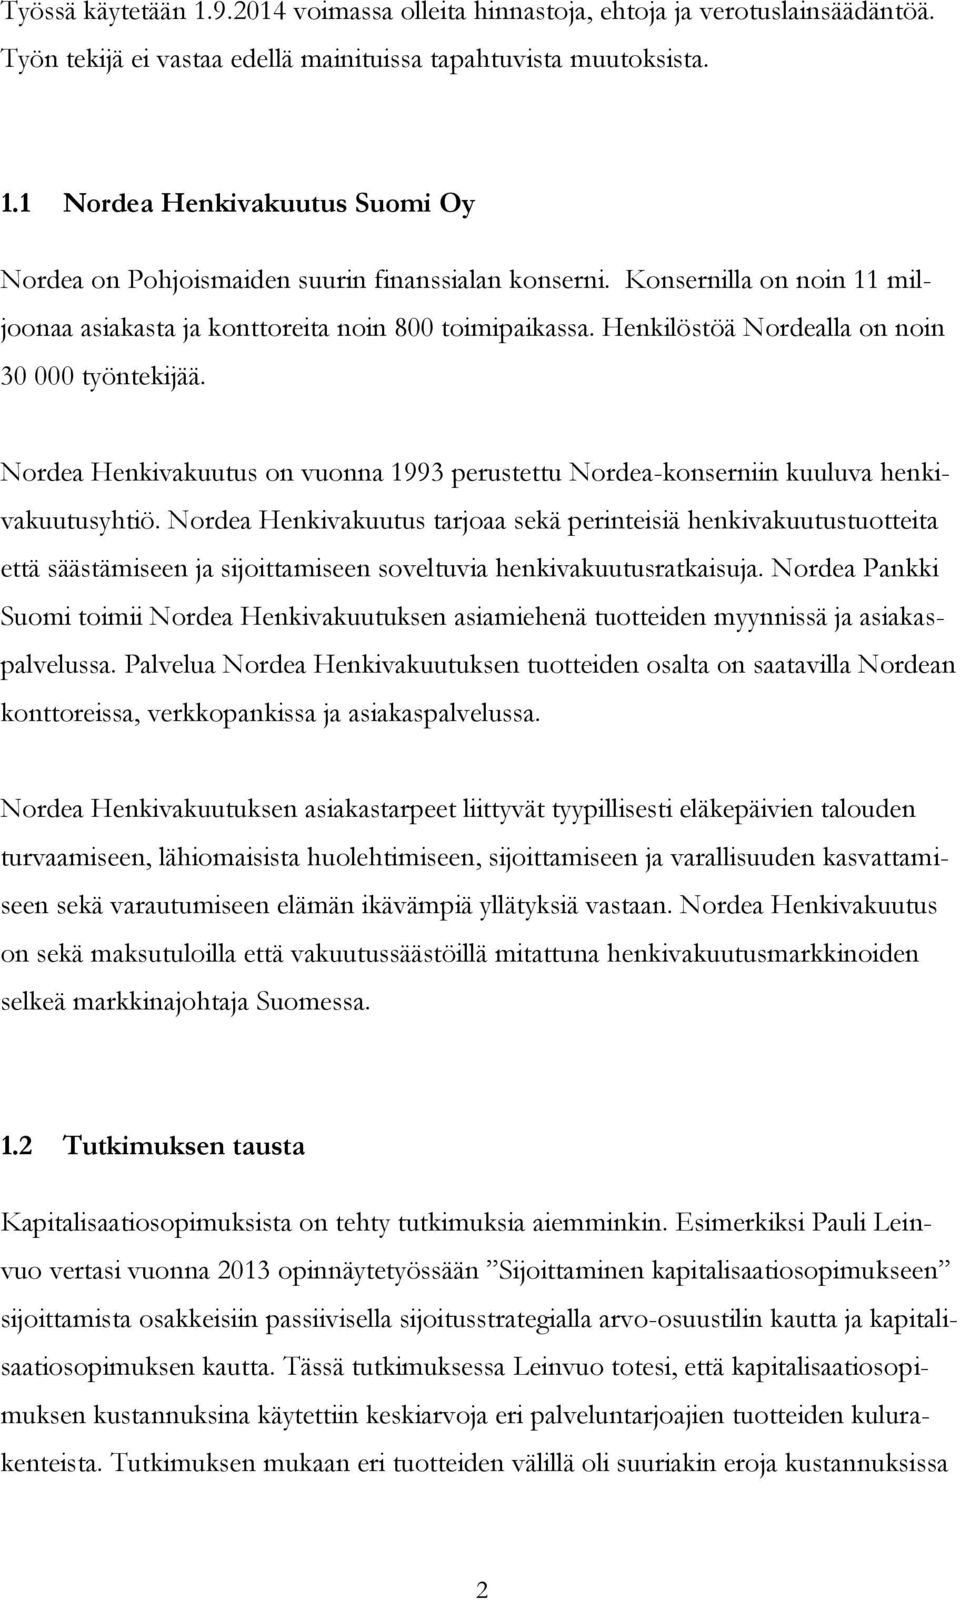 Nordea Henkivakuutus on vuonna 1993 perustettu Nordea-konserniin kuuluva henkivakuutusyhtiö.